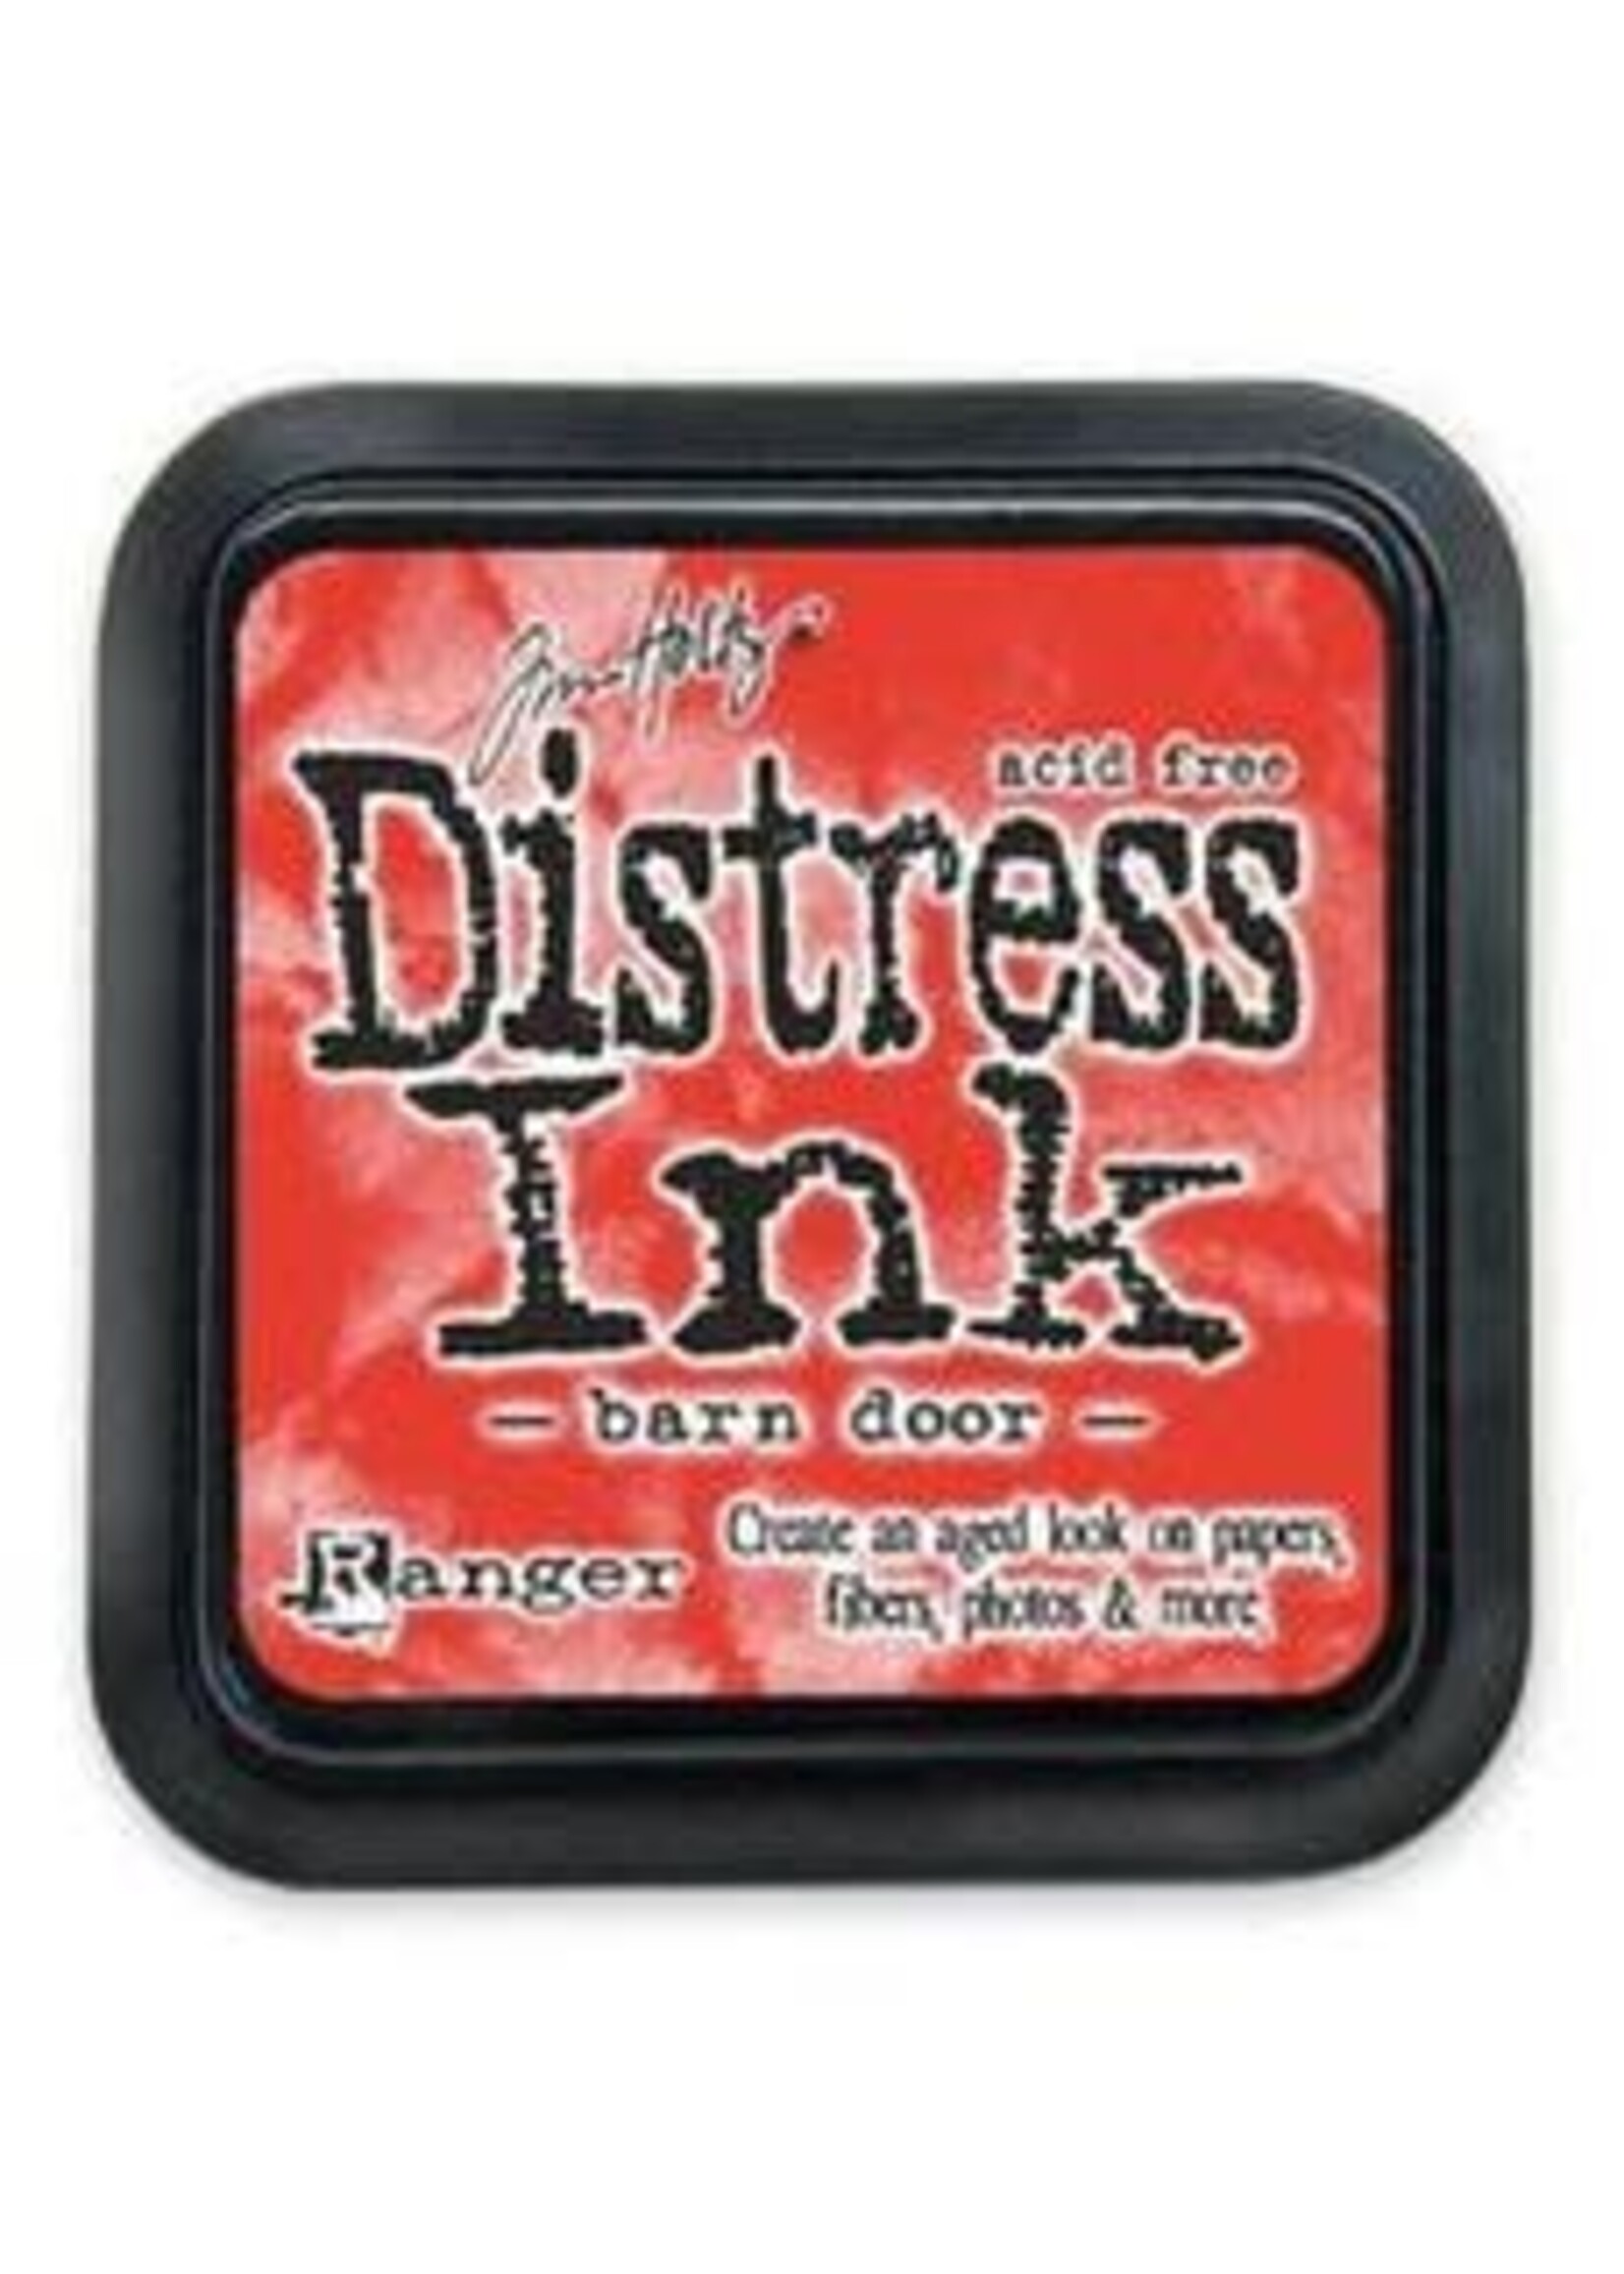 RANGER Distress Ink Barn Door